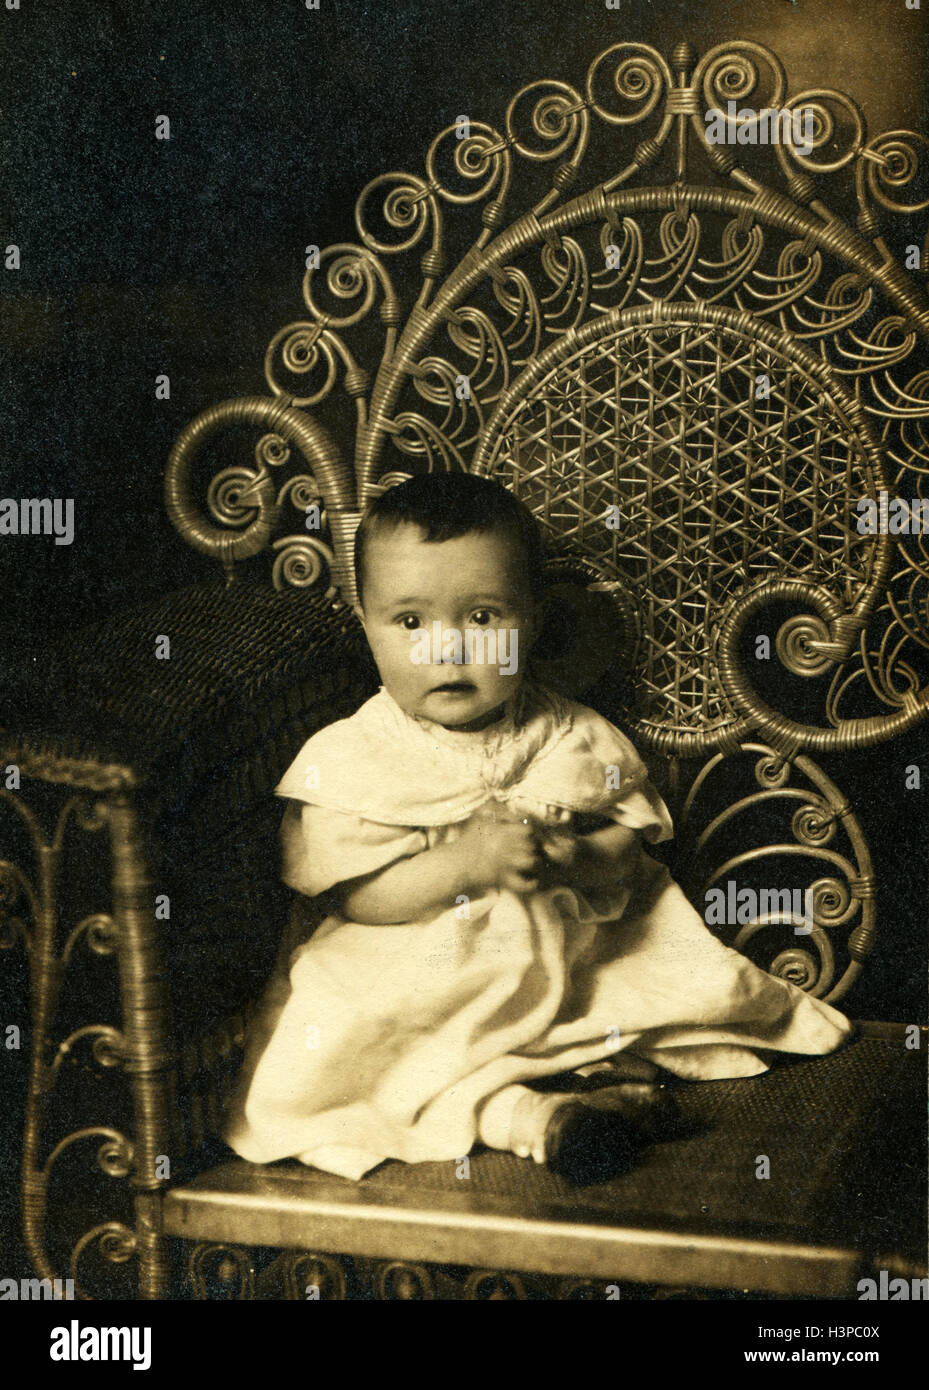 Reproduction de vintage photo. Studio photo de petite fille assise dans le fauteuil, USA, 1890 Banque D'Images